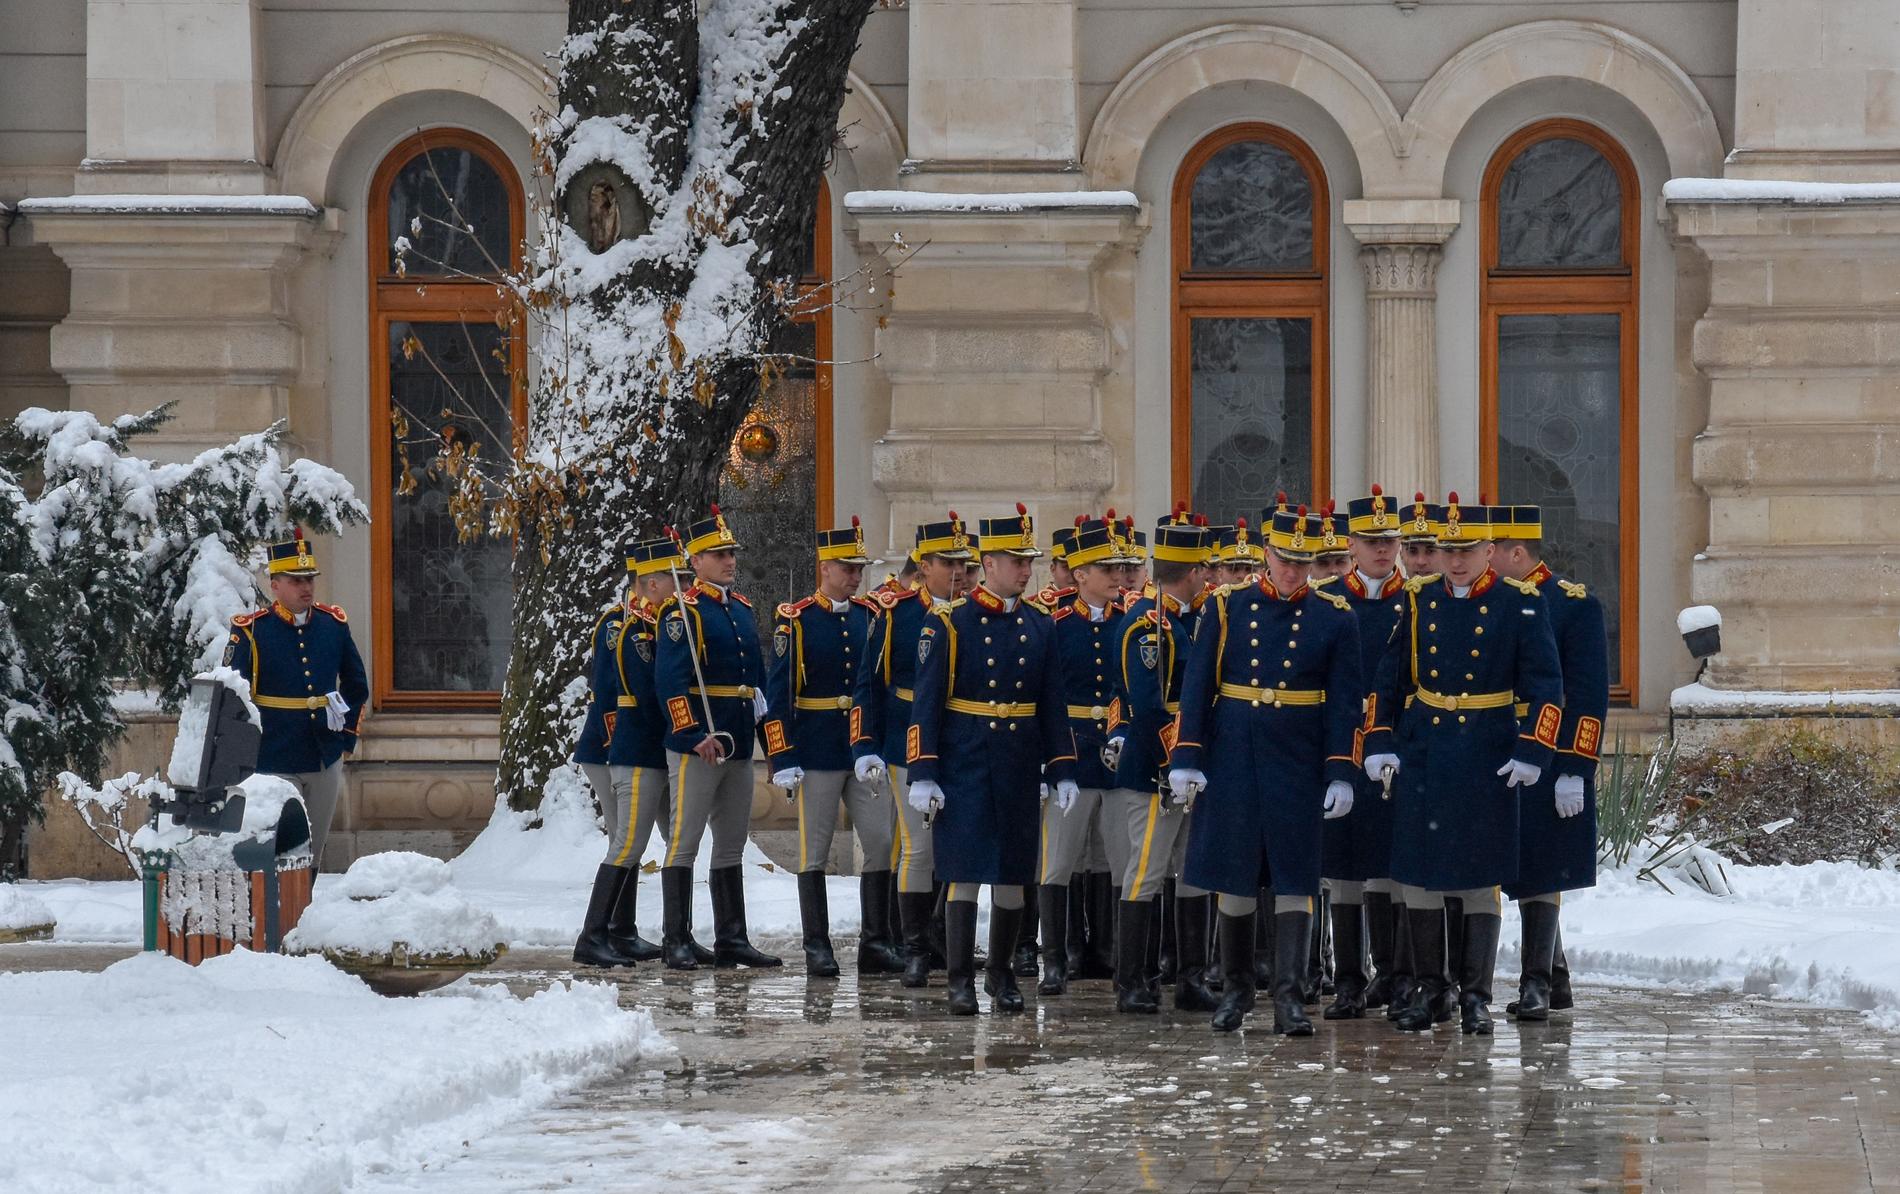 Rumänska soldater i paraduniform gör sig redo att ta emot EU-kommissionen på besök i presidentpalatset i Bukarest.